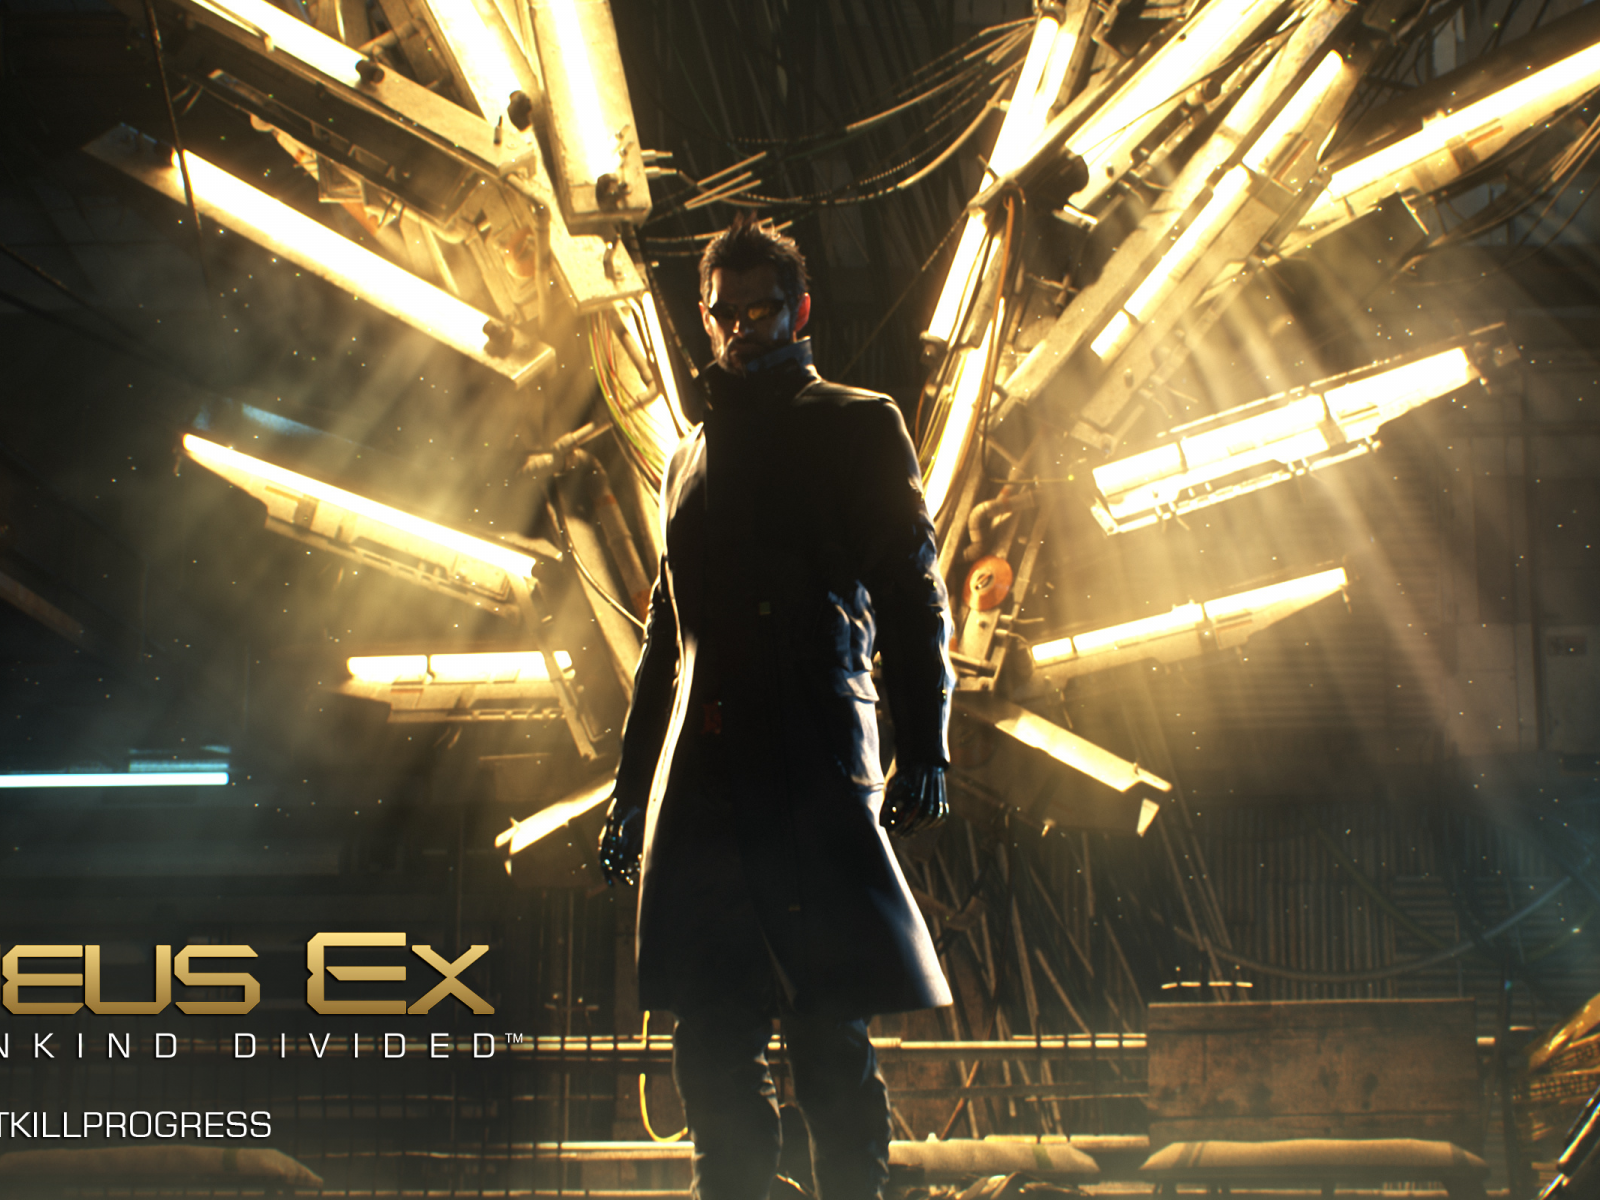 Deus Ex, Mankind Divided, DEMD